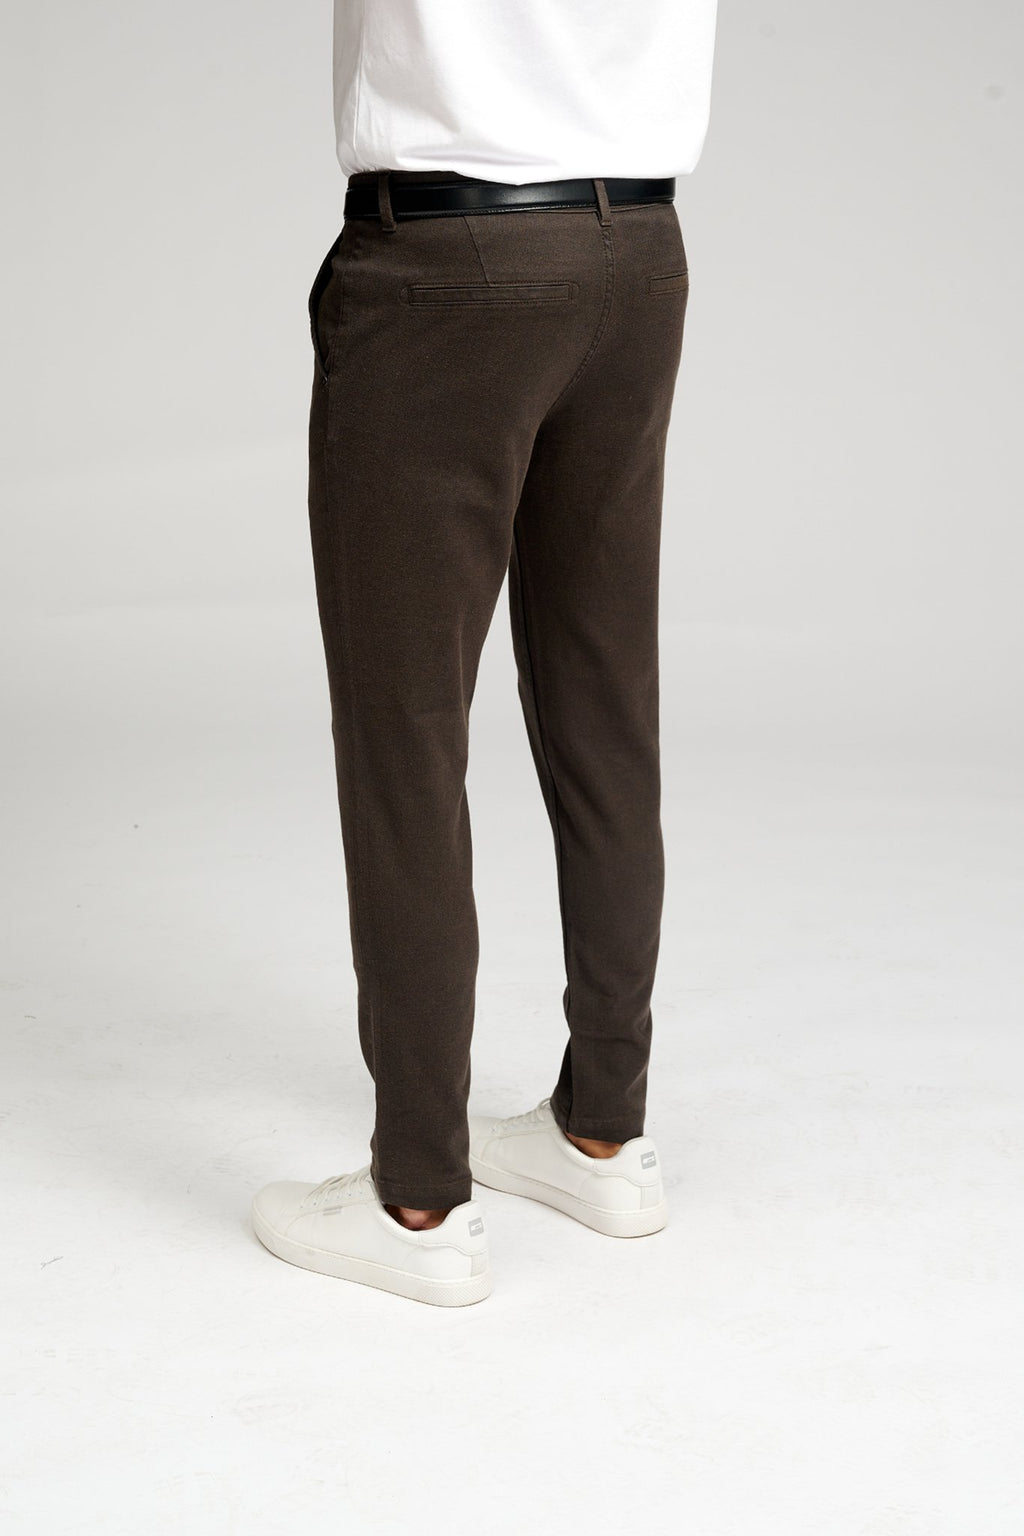 原始性能结构裤子 - 深棕色